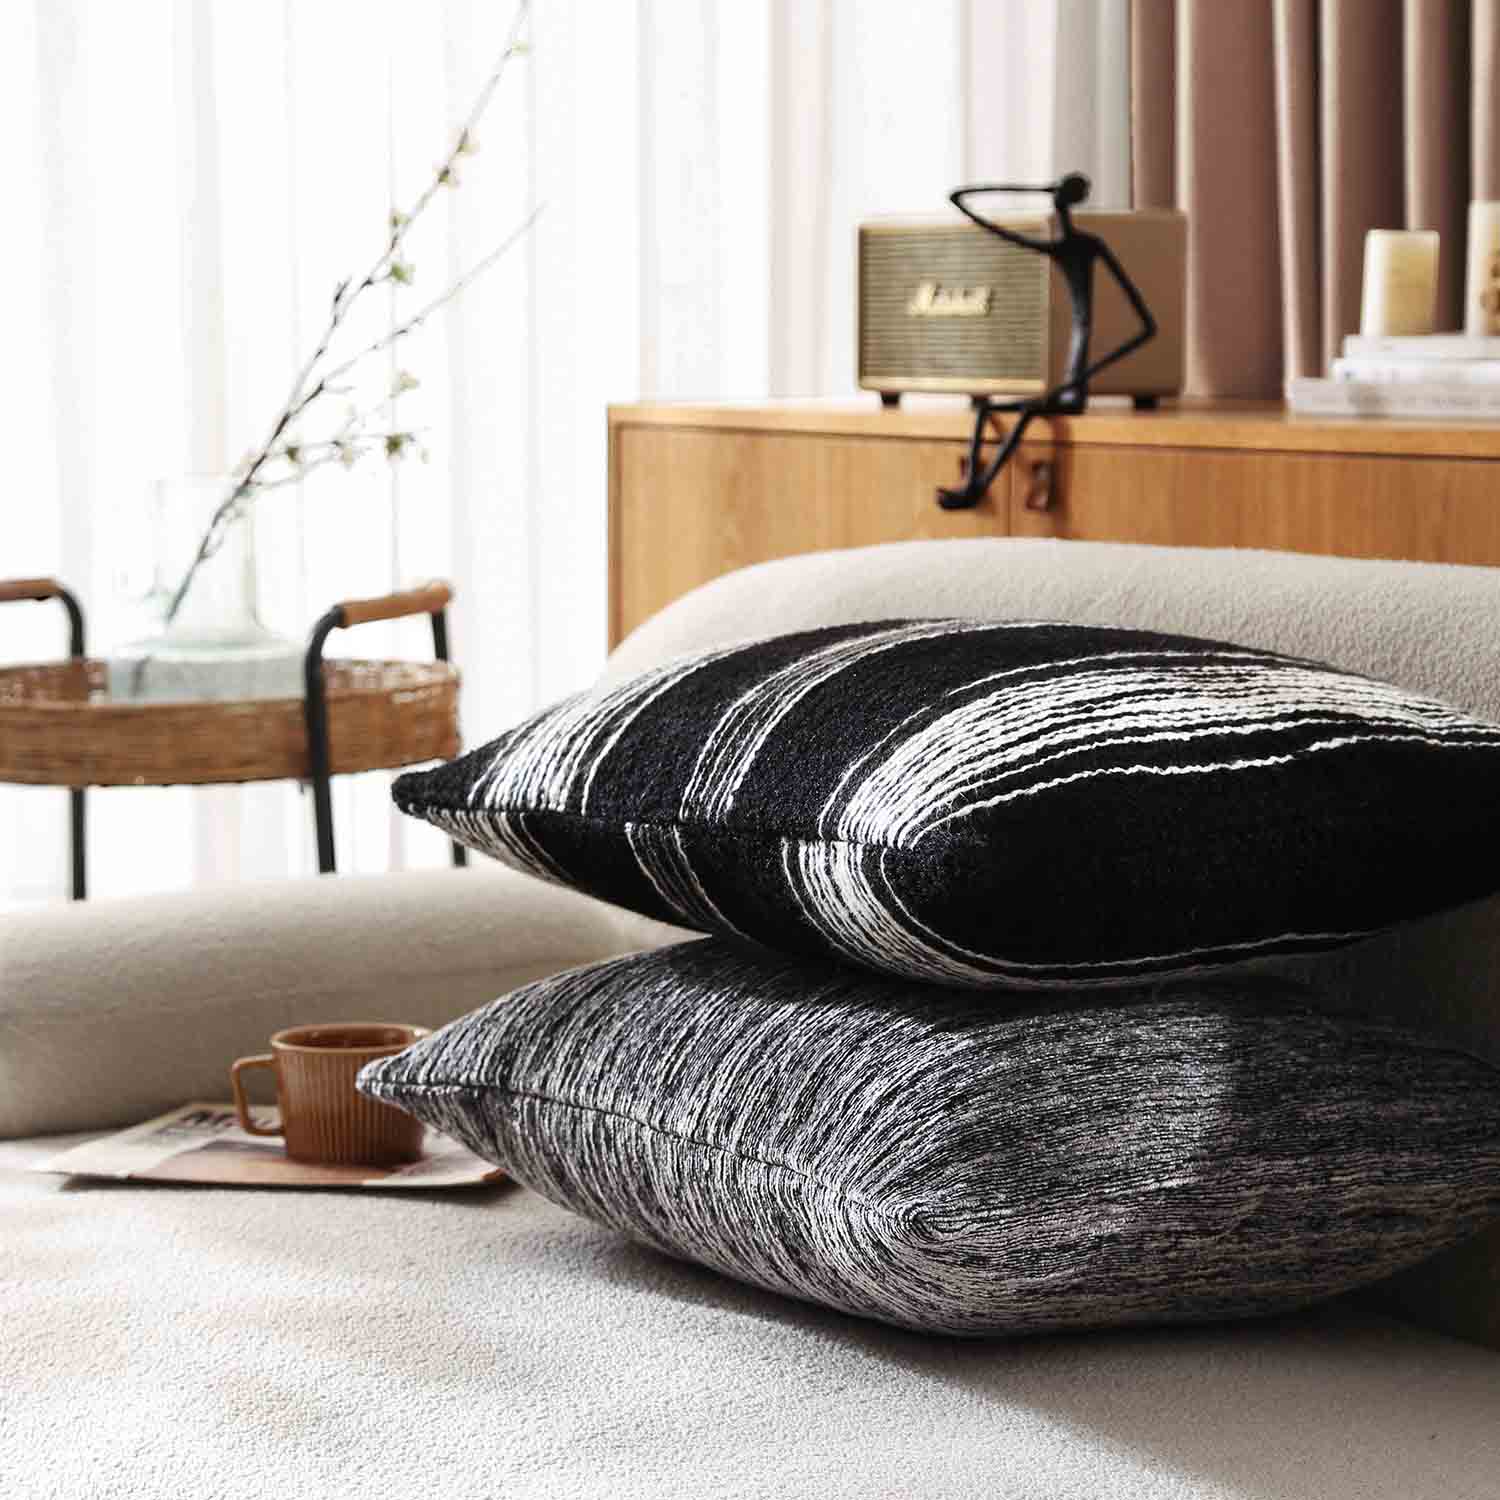 Larino Textured Chenille Decorative Pillow Cover-